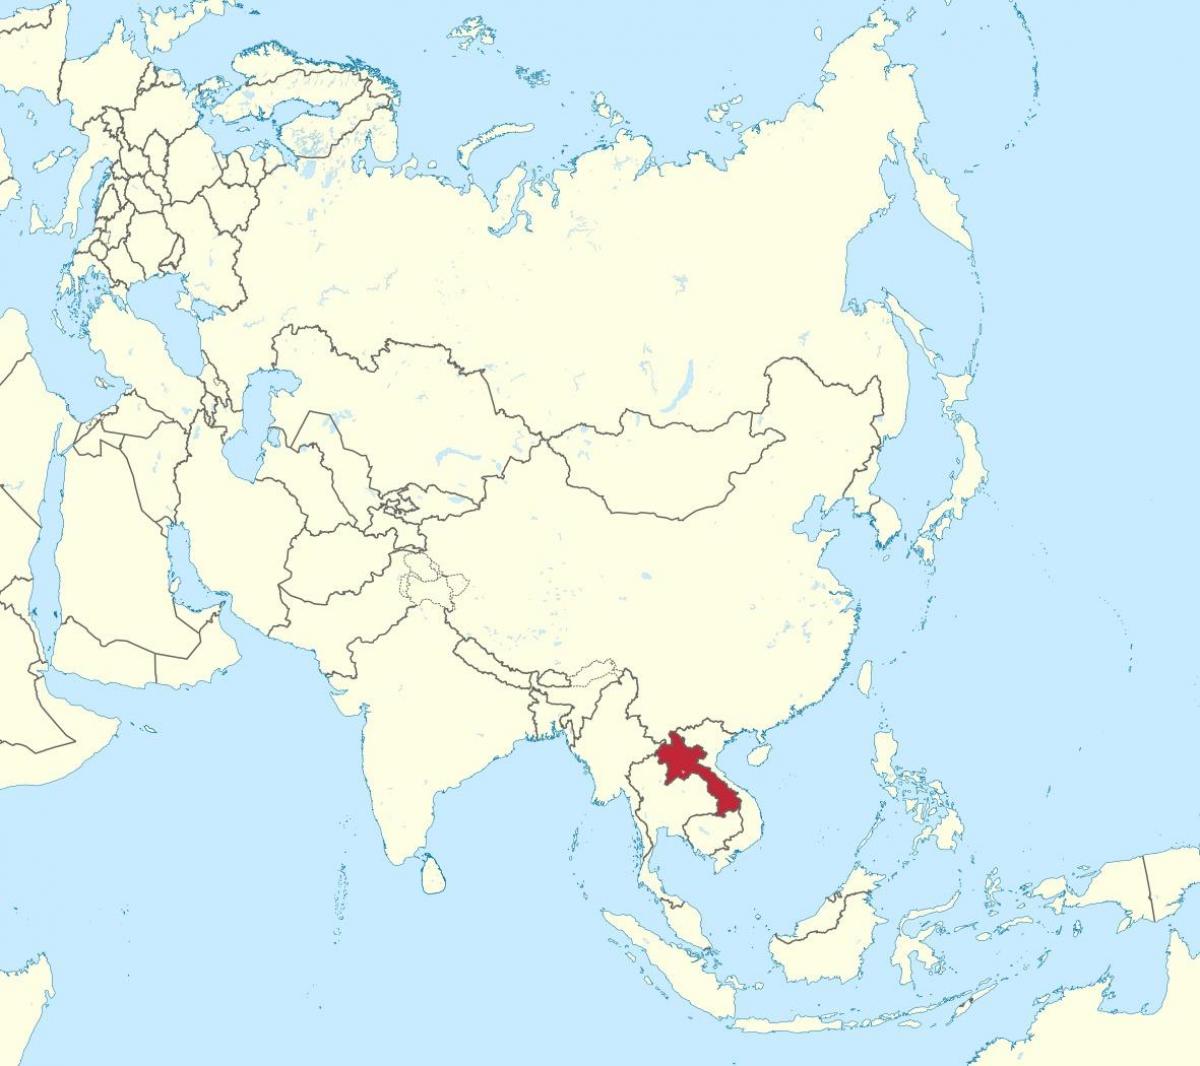 Kort over asien laos